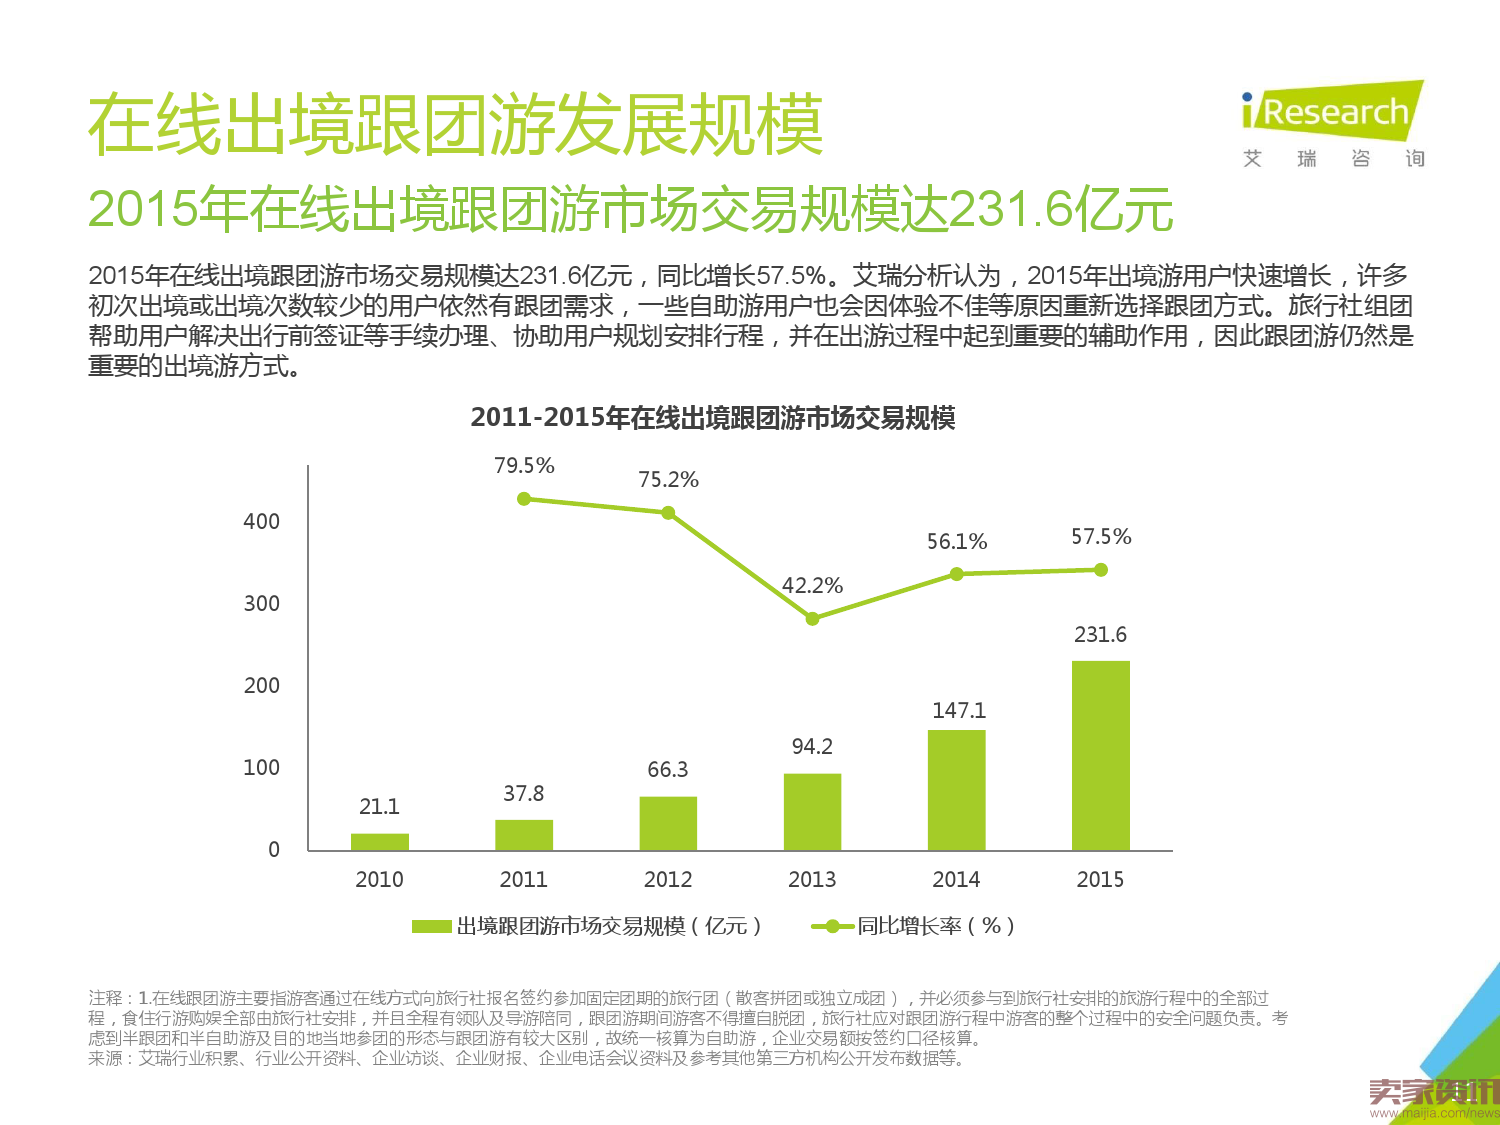 2016年中国在线出境游市场研究报告_000011.png